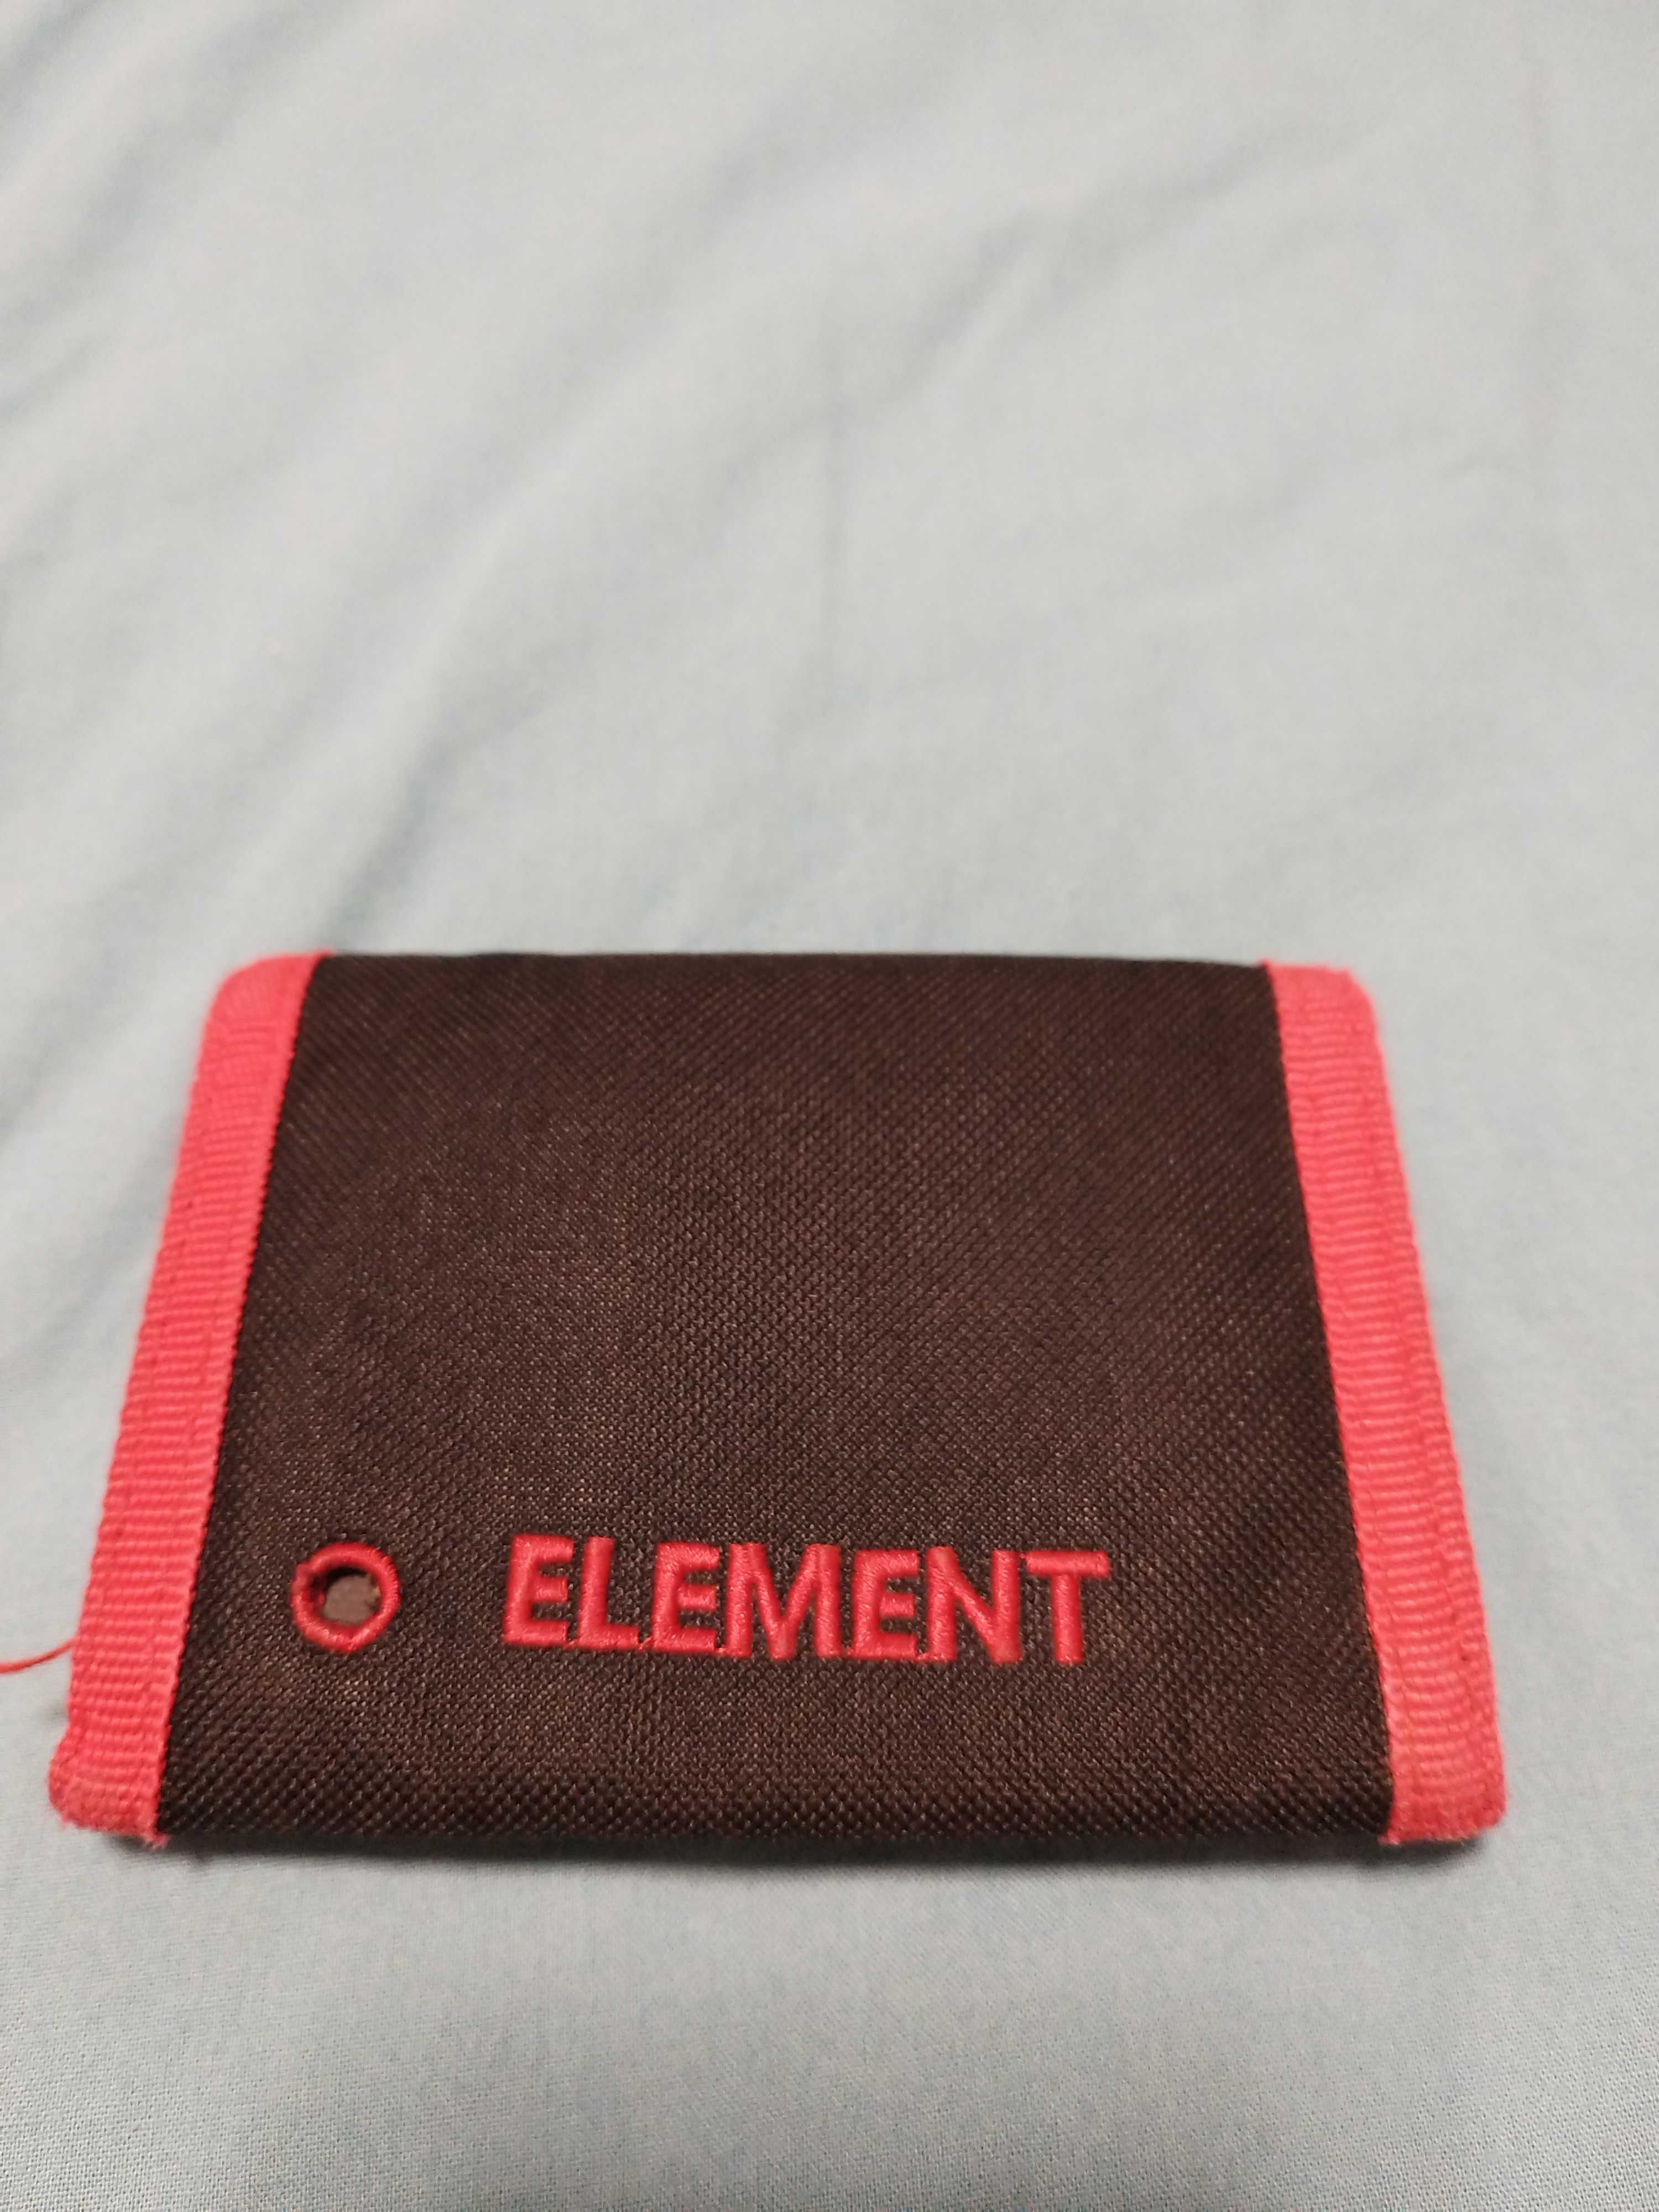 Carteira da marca Element